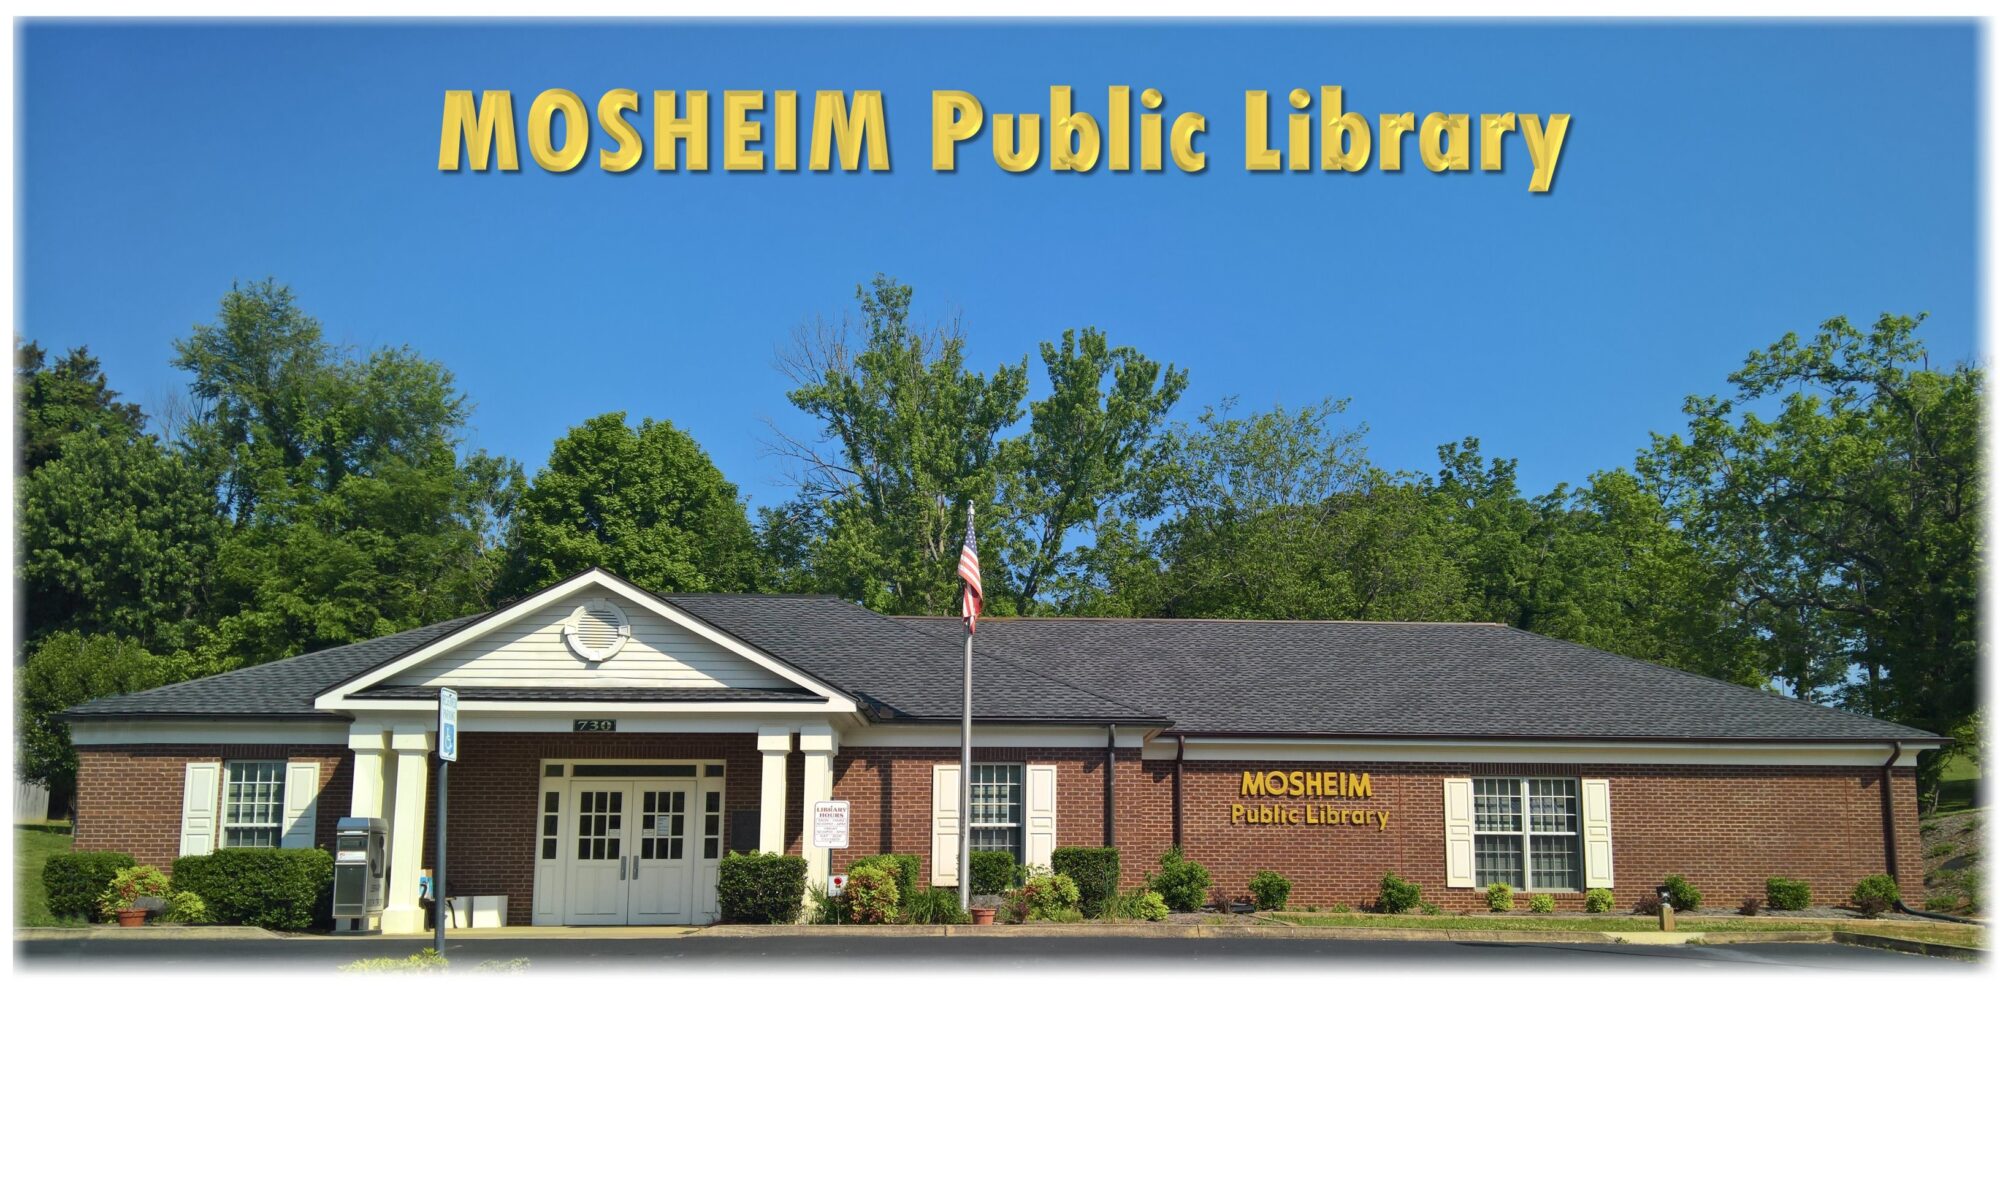 Mosheim Public Library